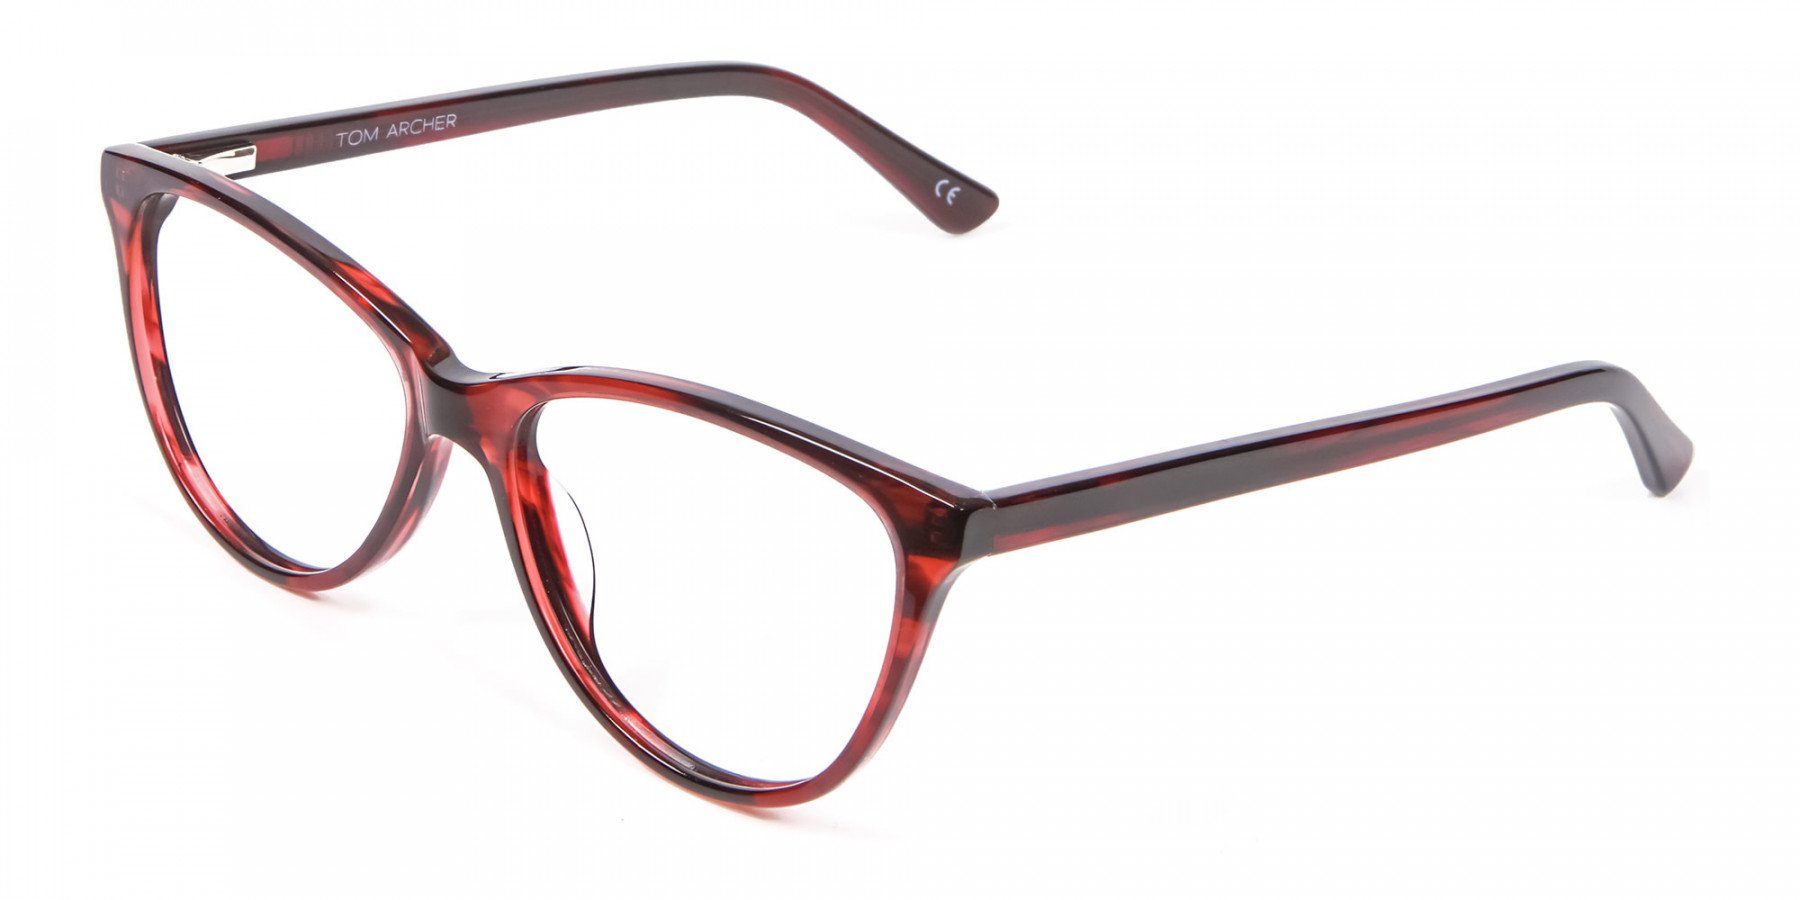 Designer Red Cat Eye Glasses for Women